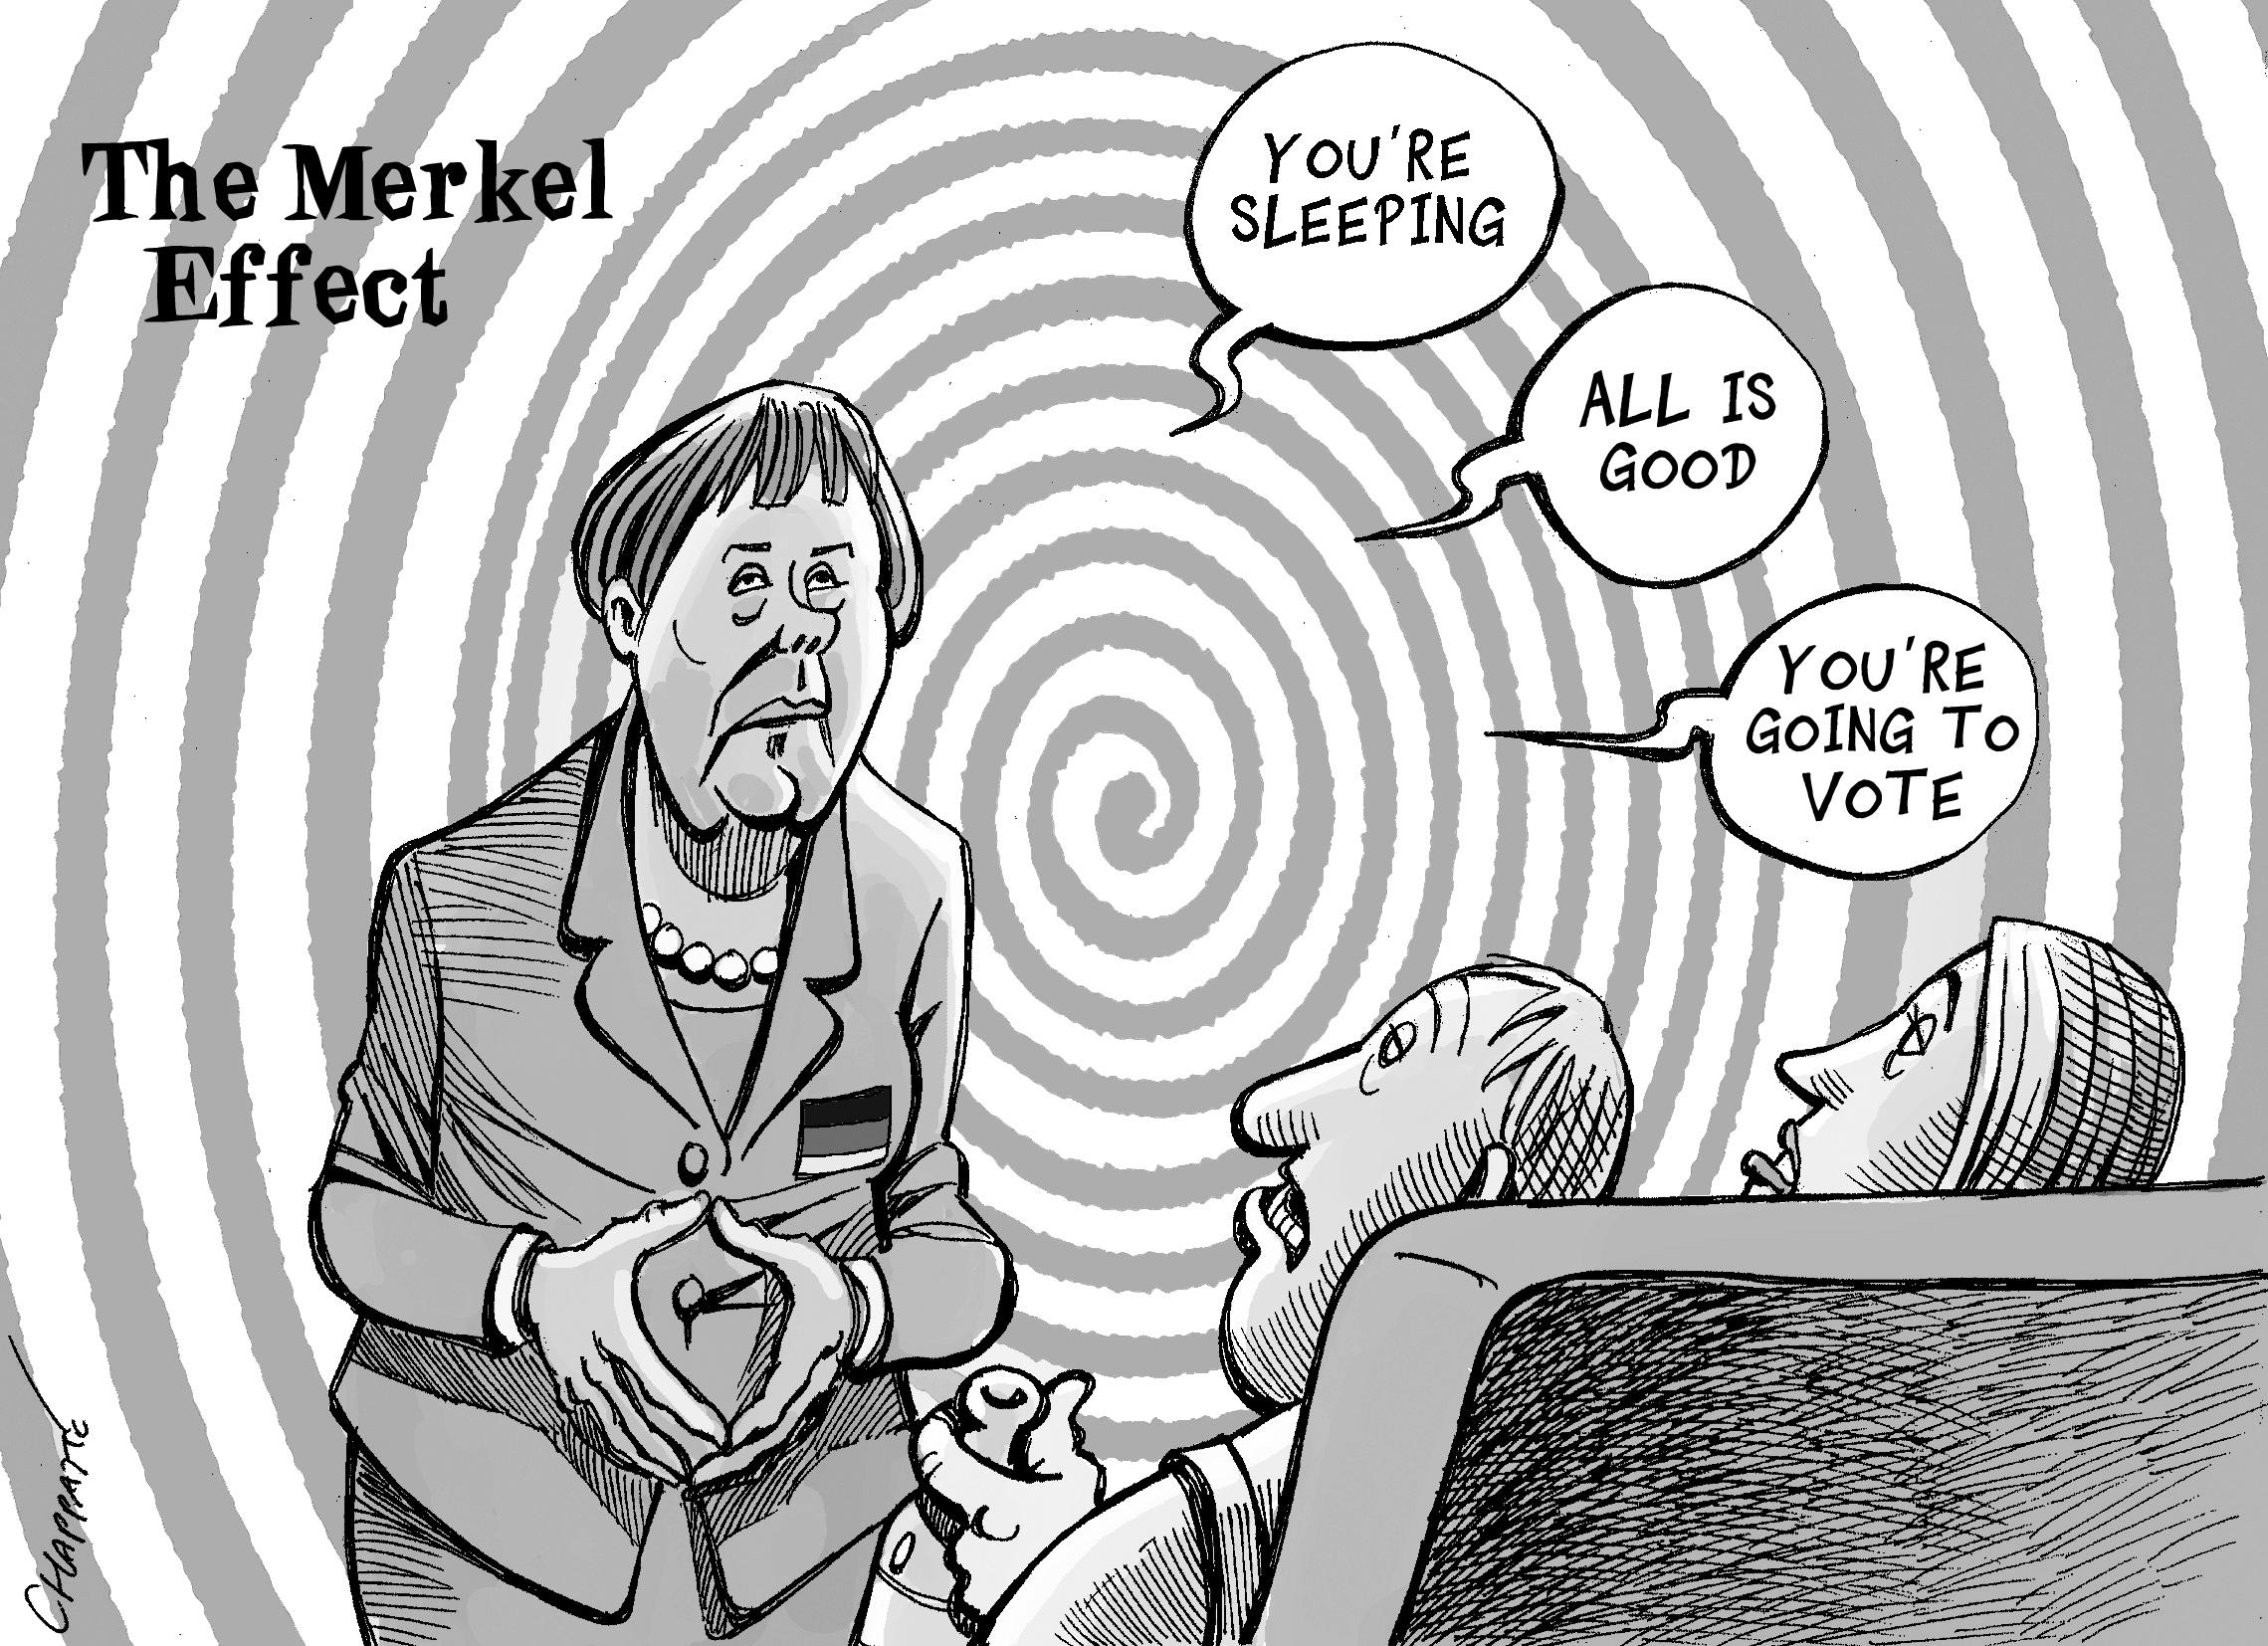 One week before German elections